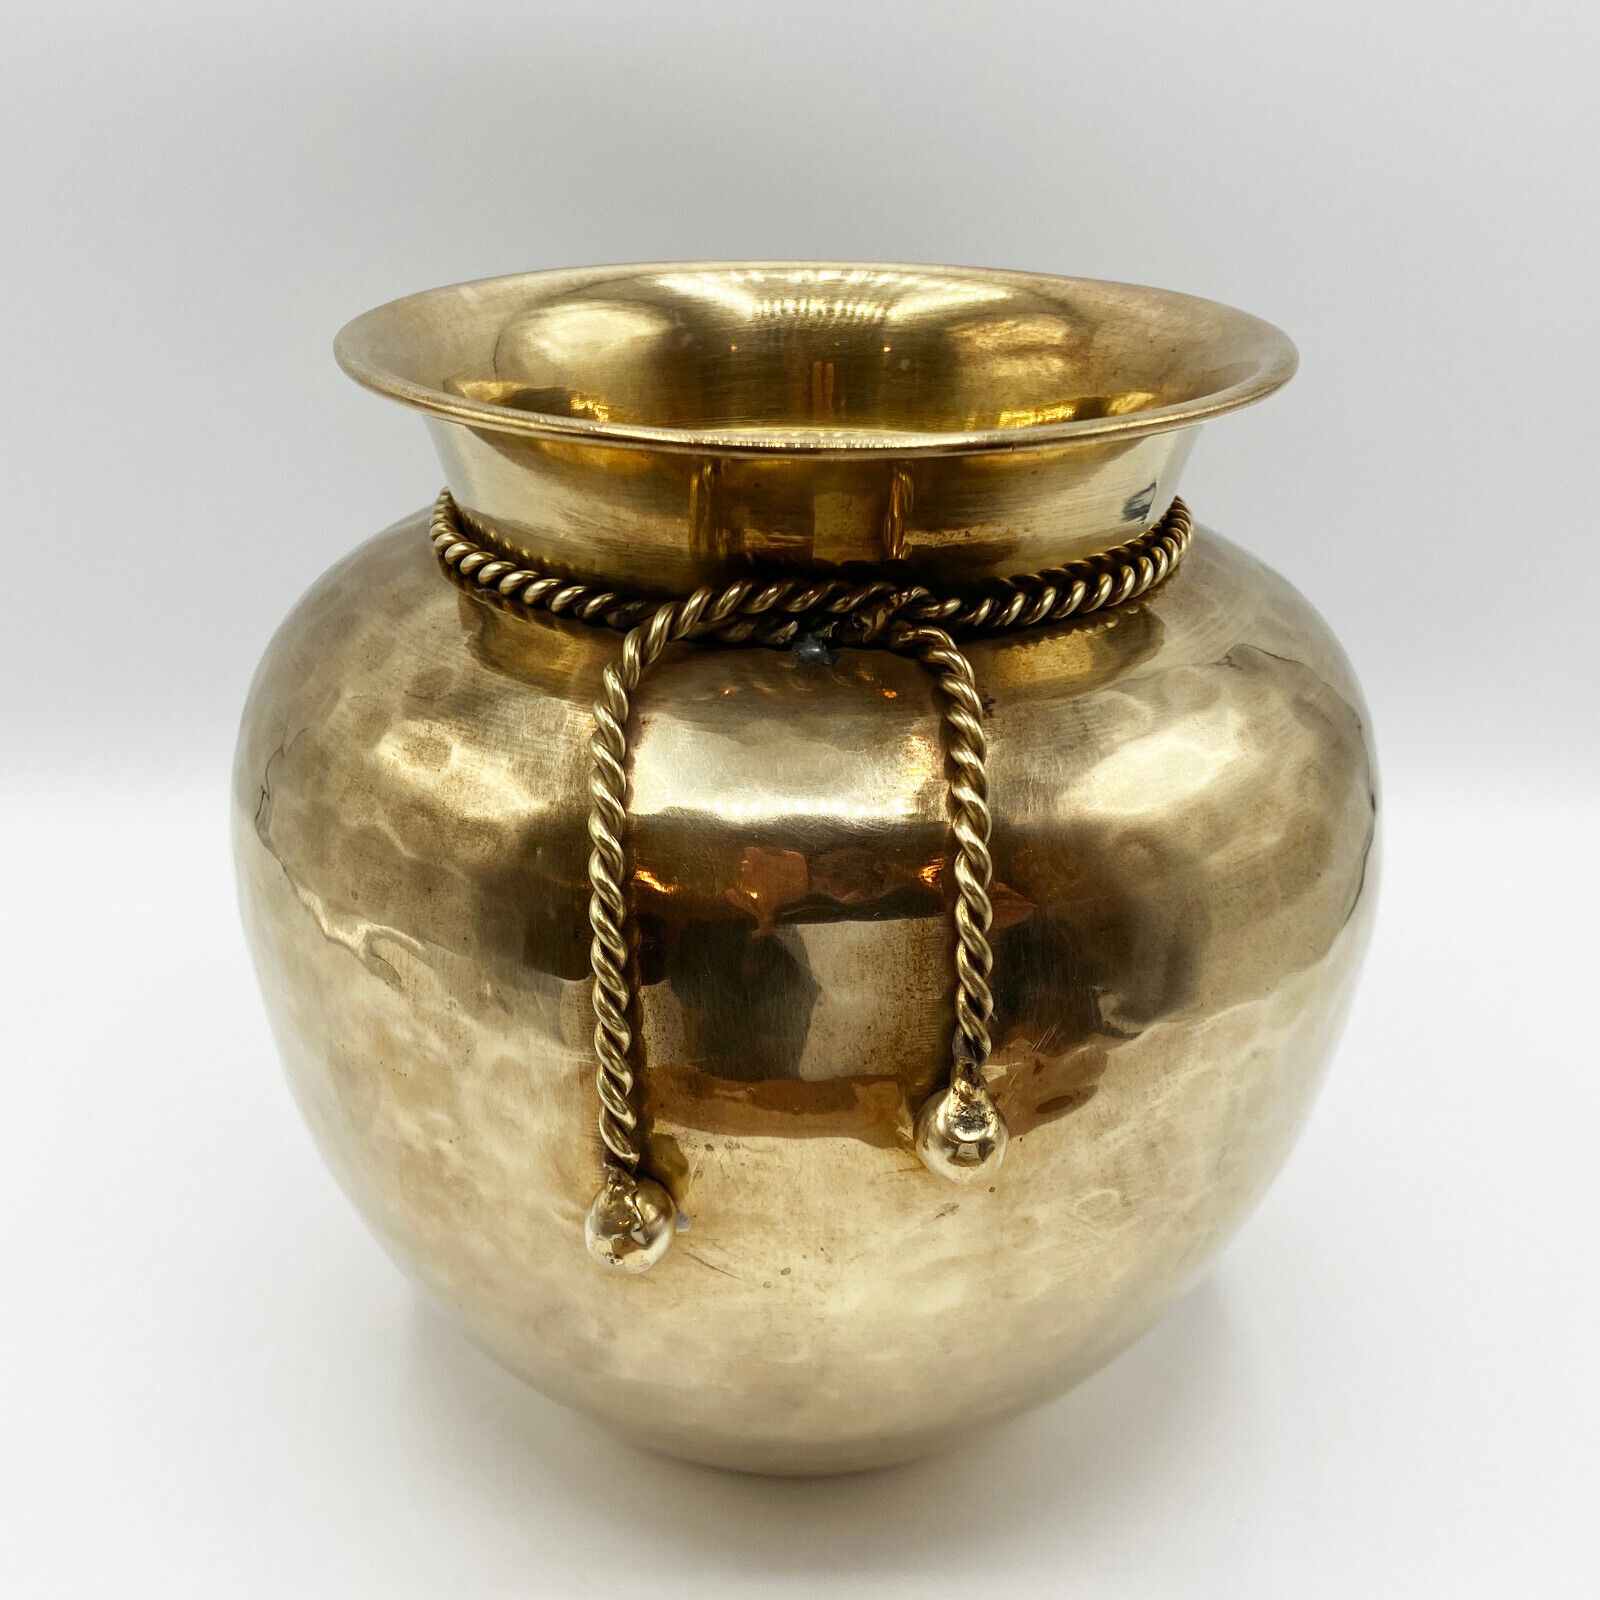 Vintage Hammered Polished Brass Planter with Rope Detail - Vase Urn Bucket